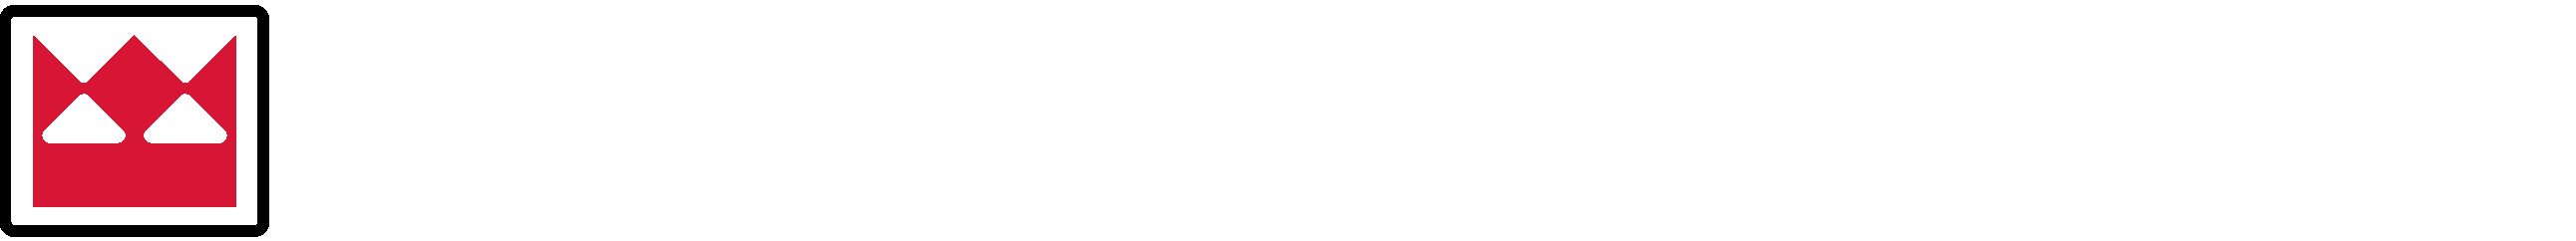 Terex Utilities Logo